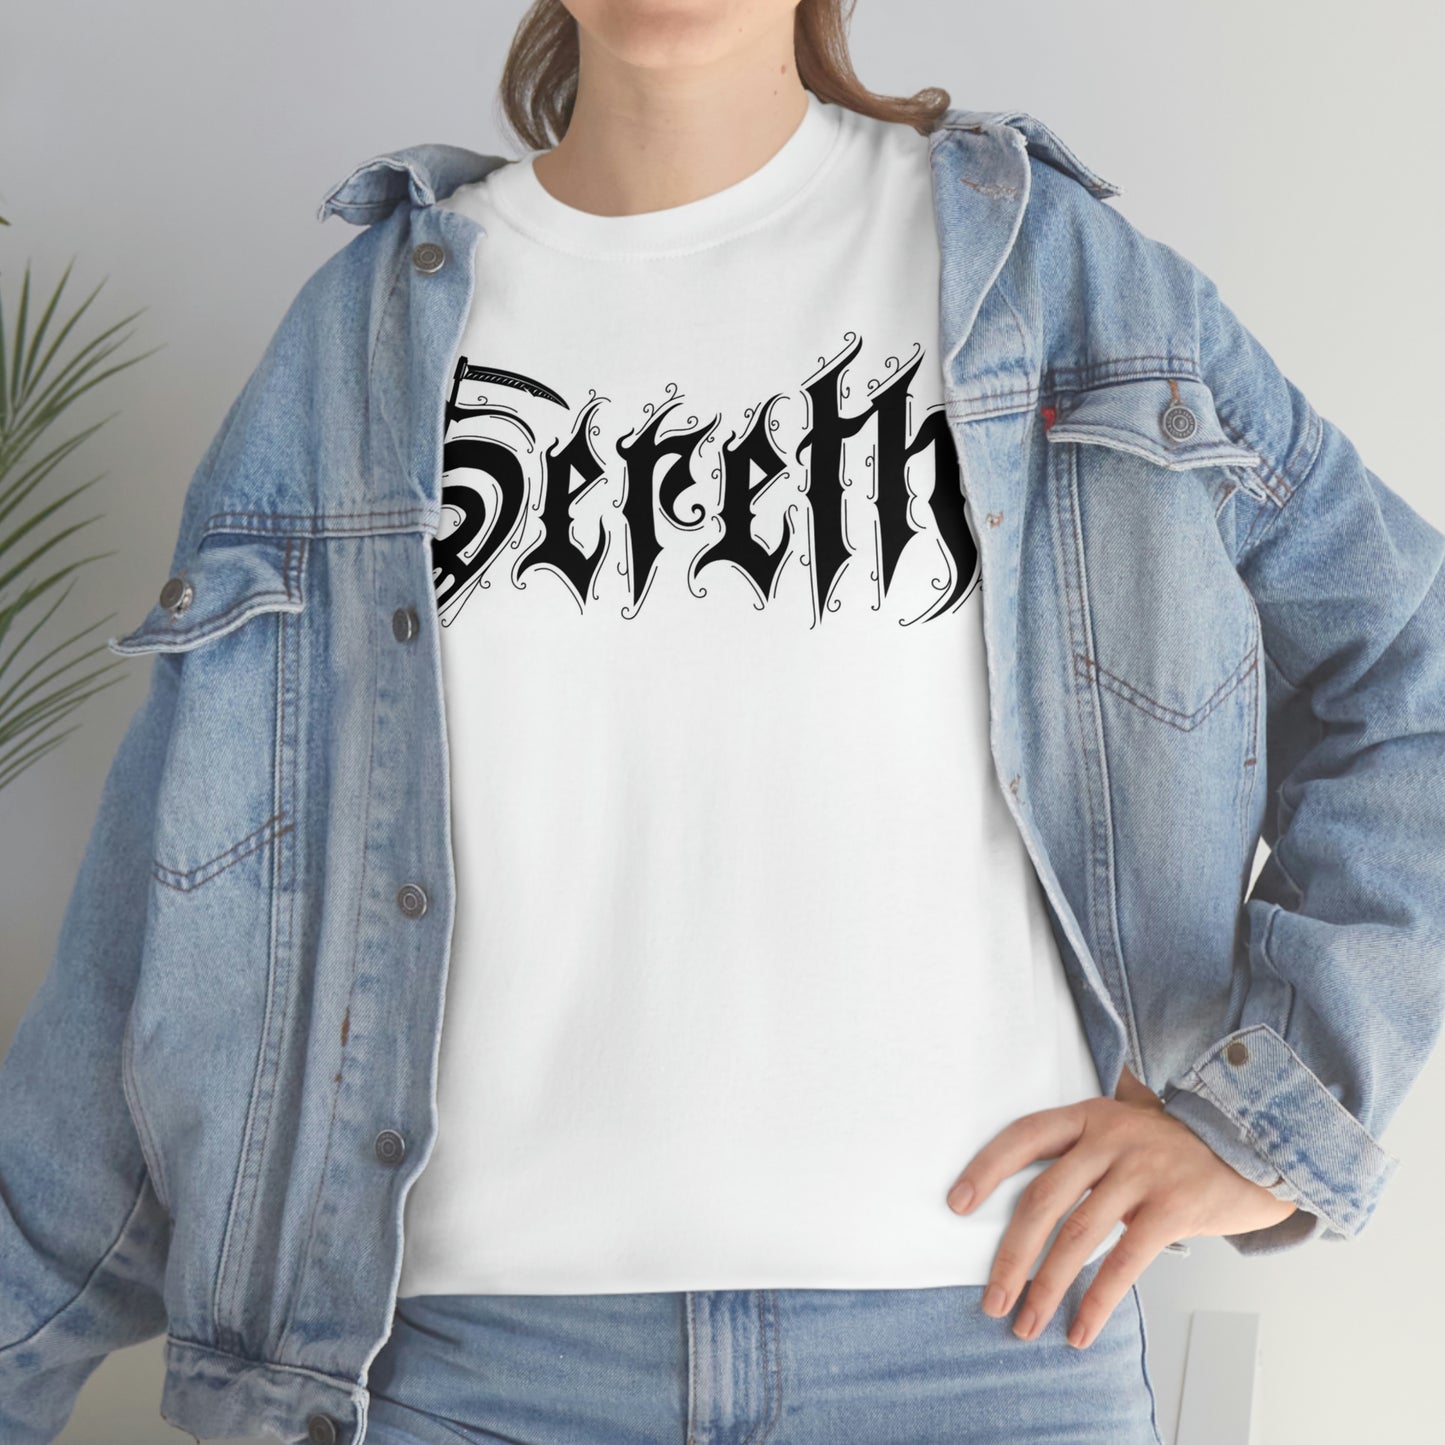 Sereth - Logo w/design (Europe)